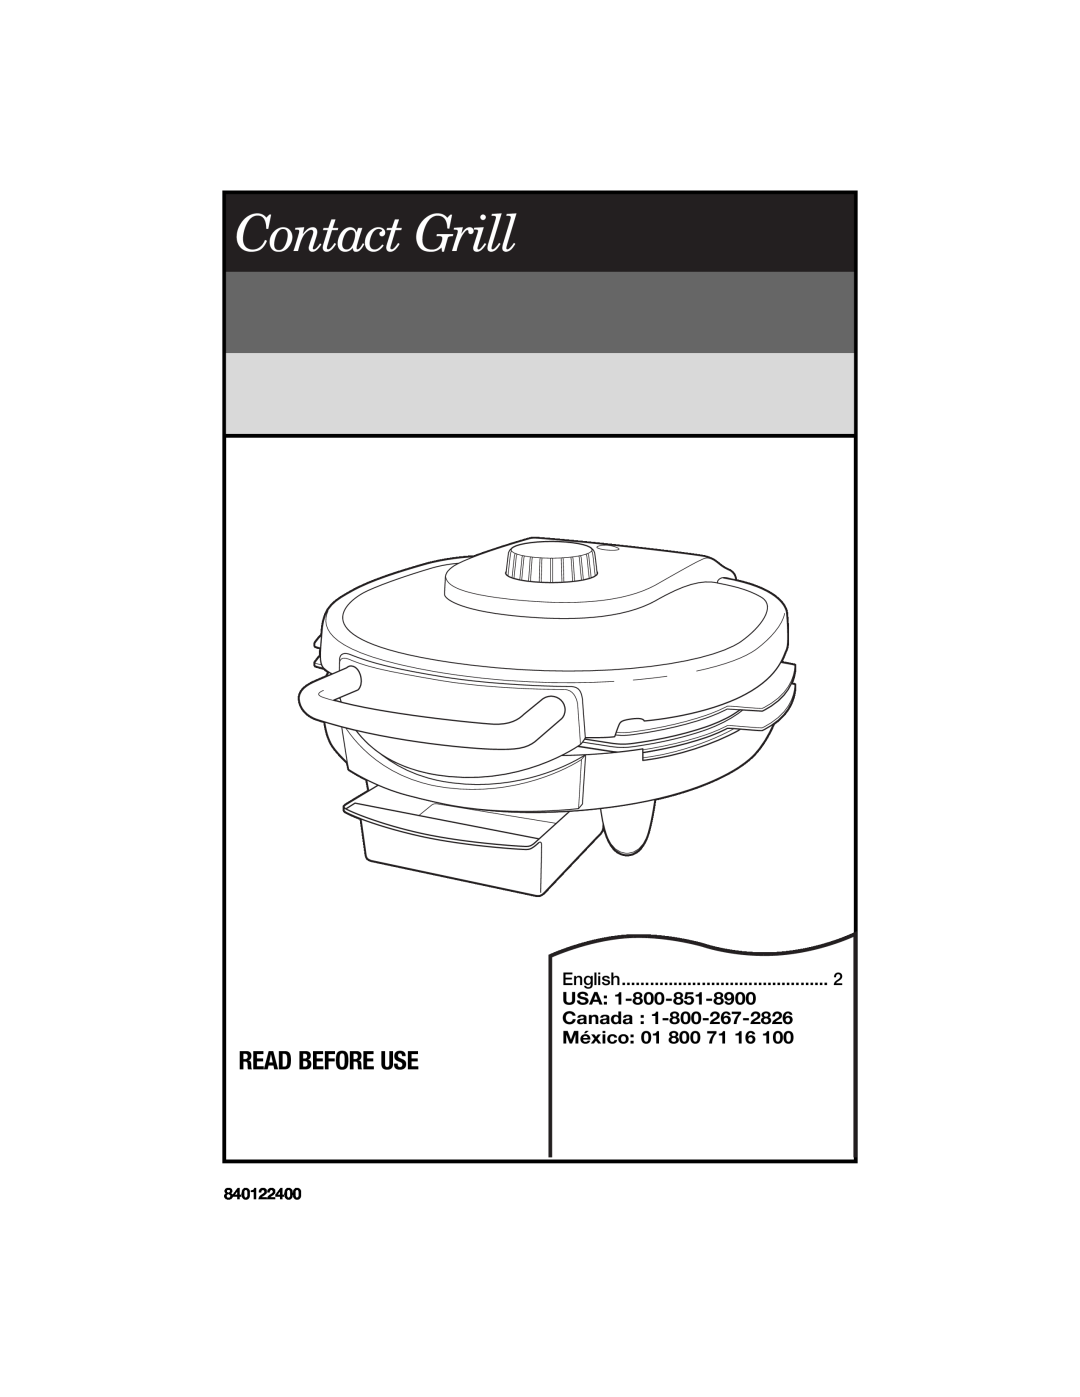 Hamilton Beach Contact Grill manual Read Before Use, Usa, Canada, México, English, 840122400 